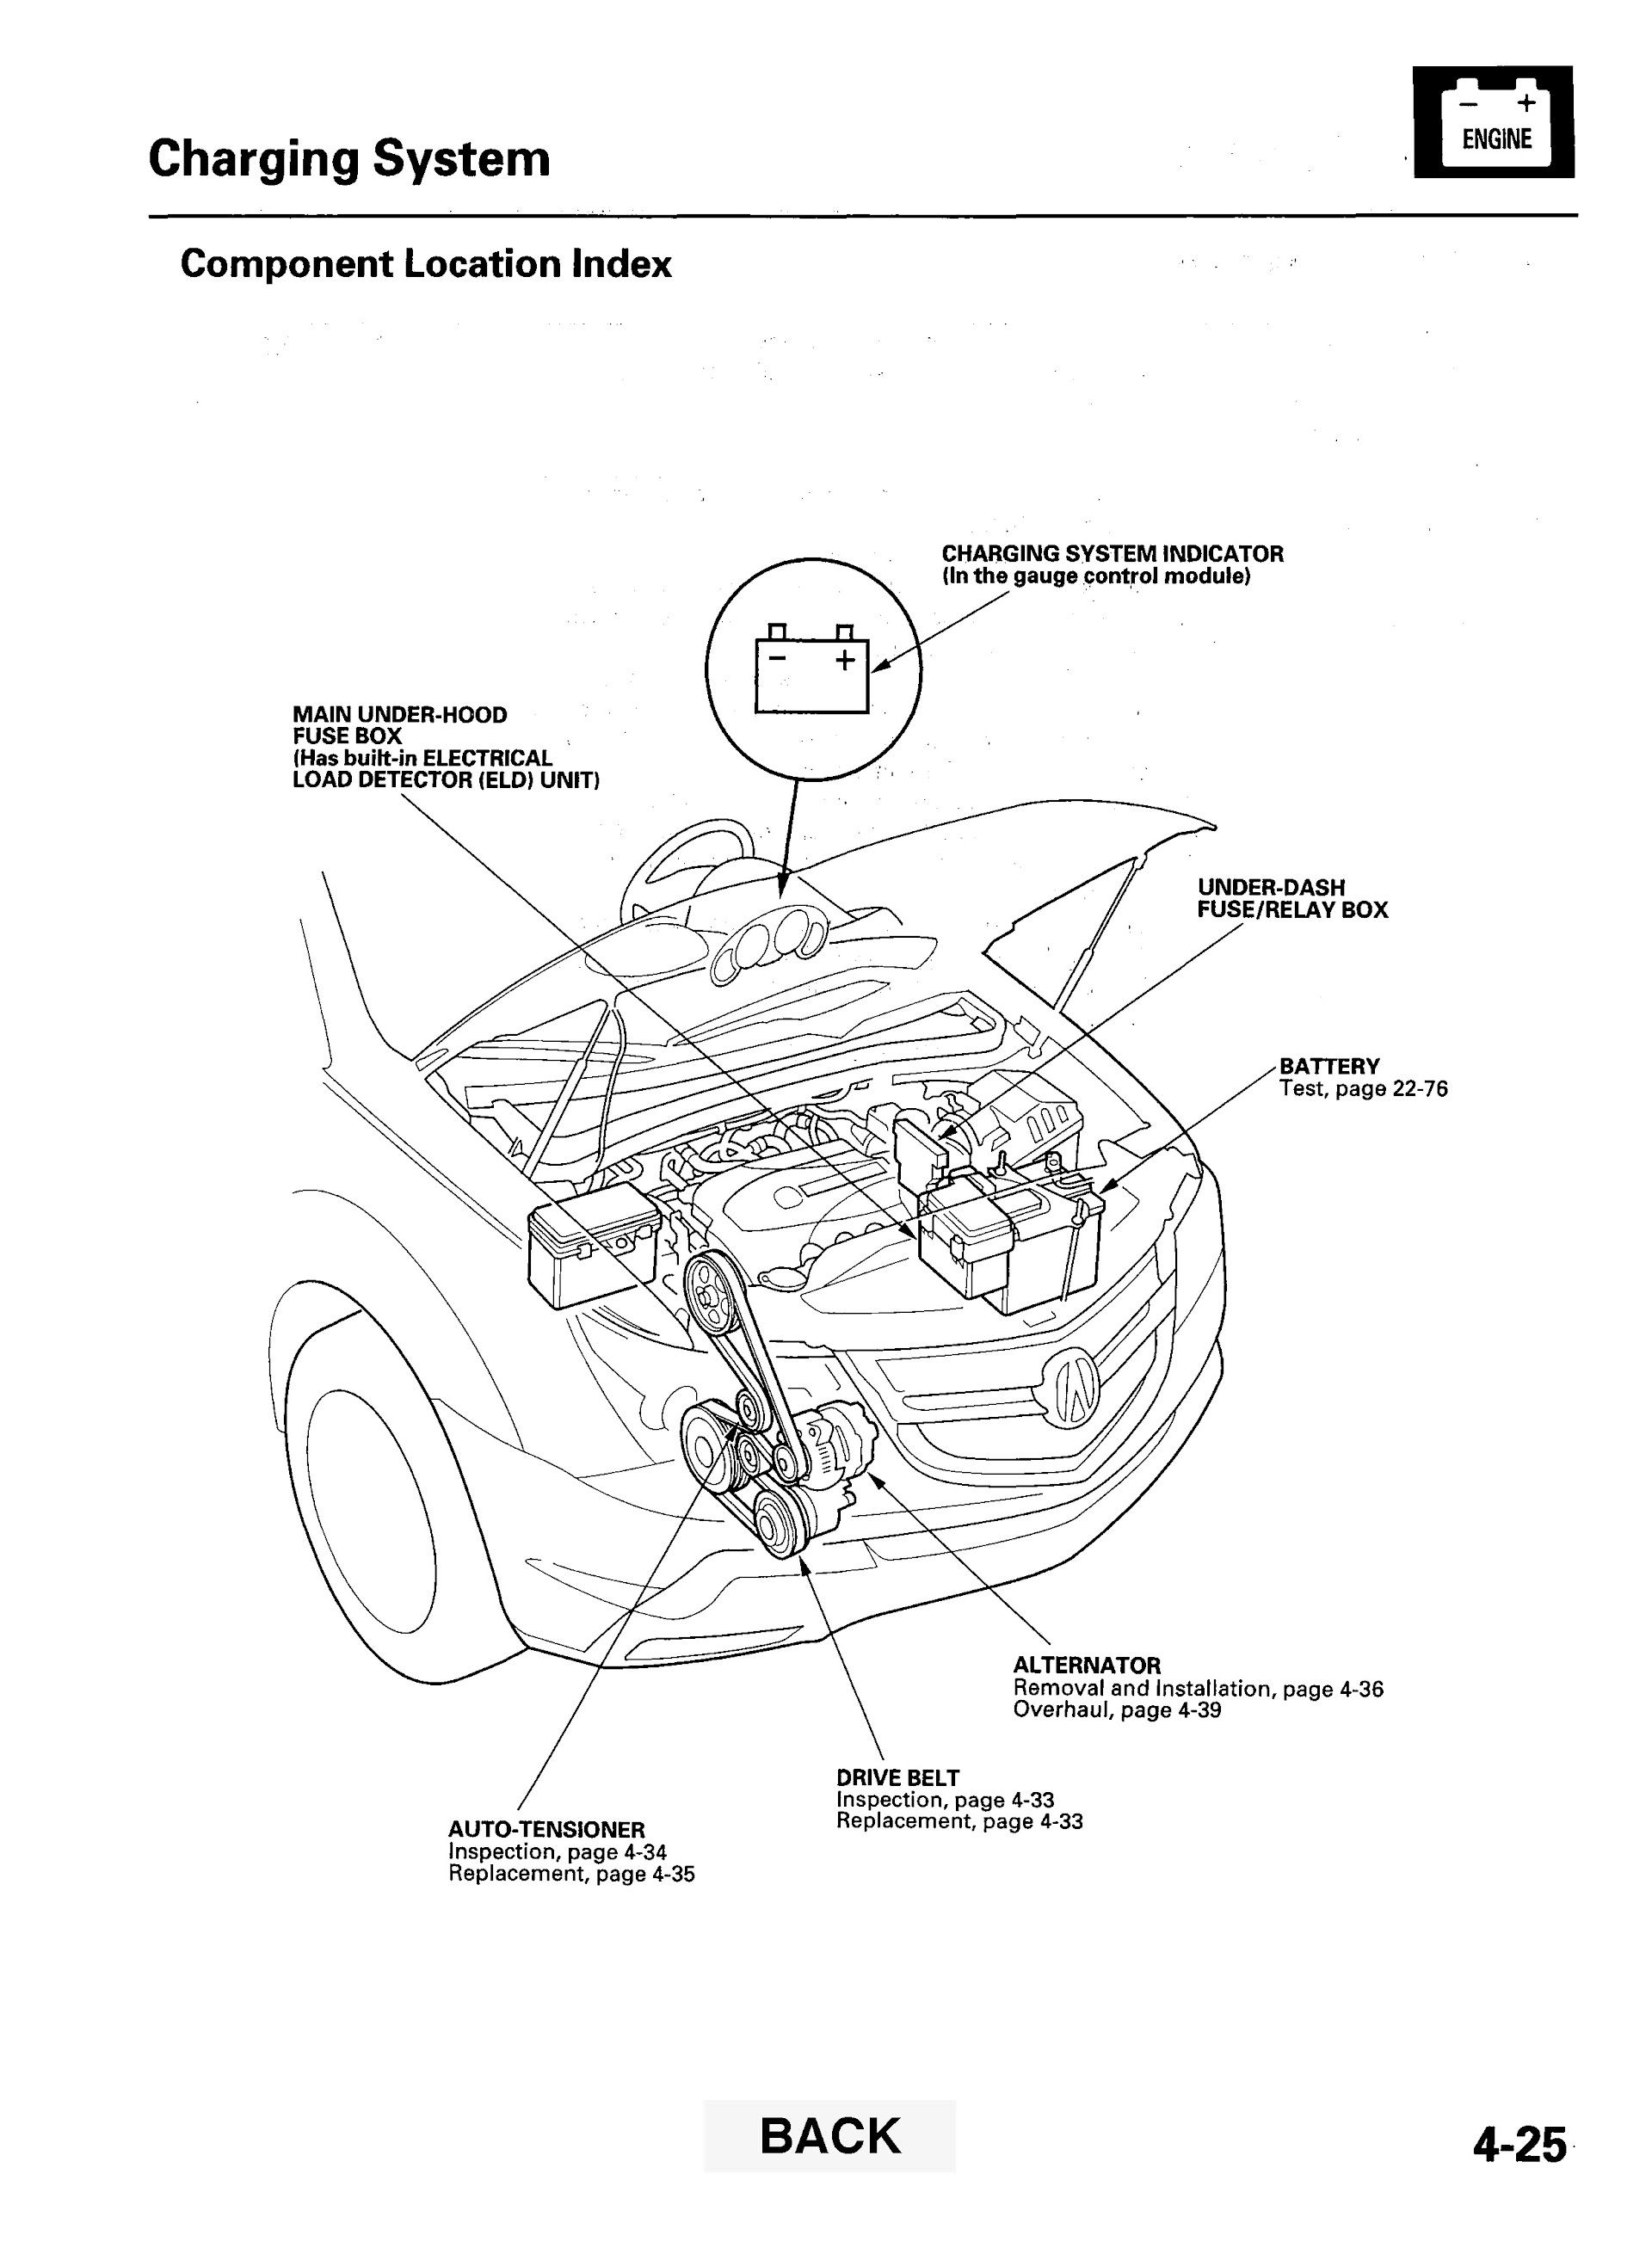 2009 Acura Mdx Repair Manual, Charging System